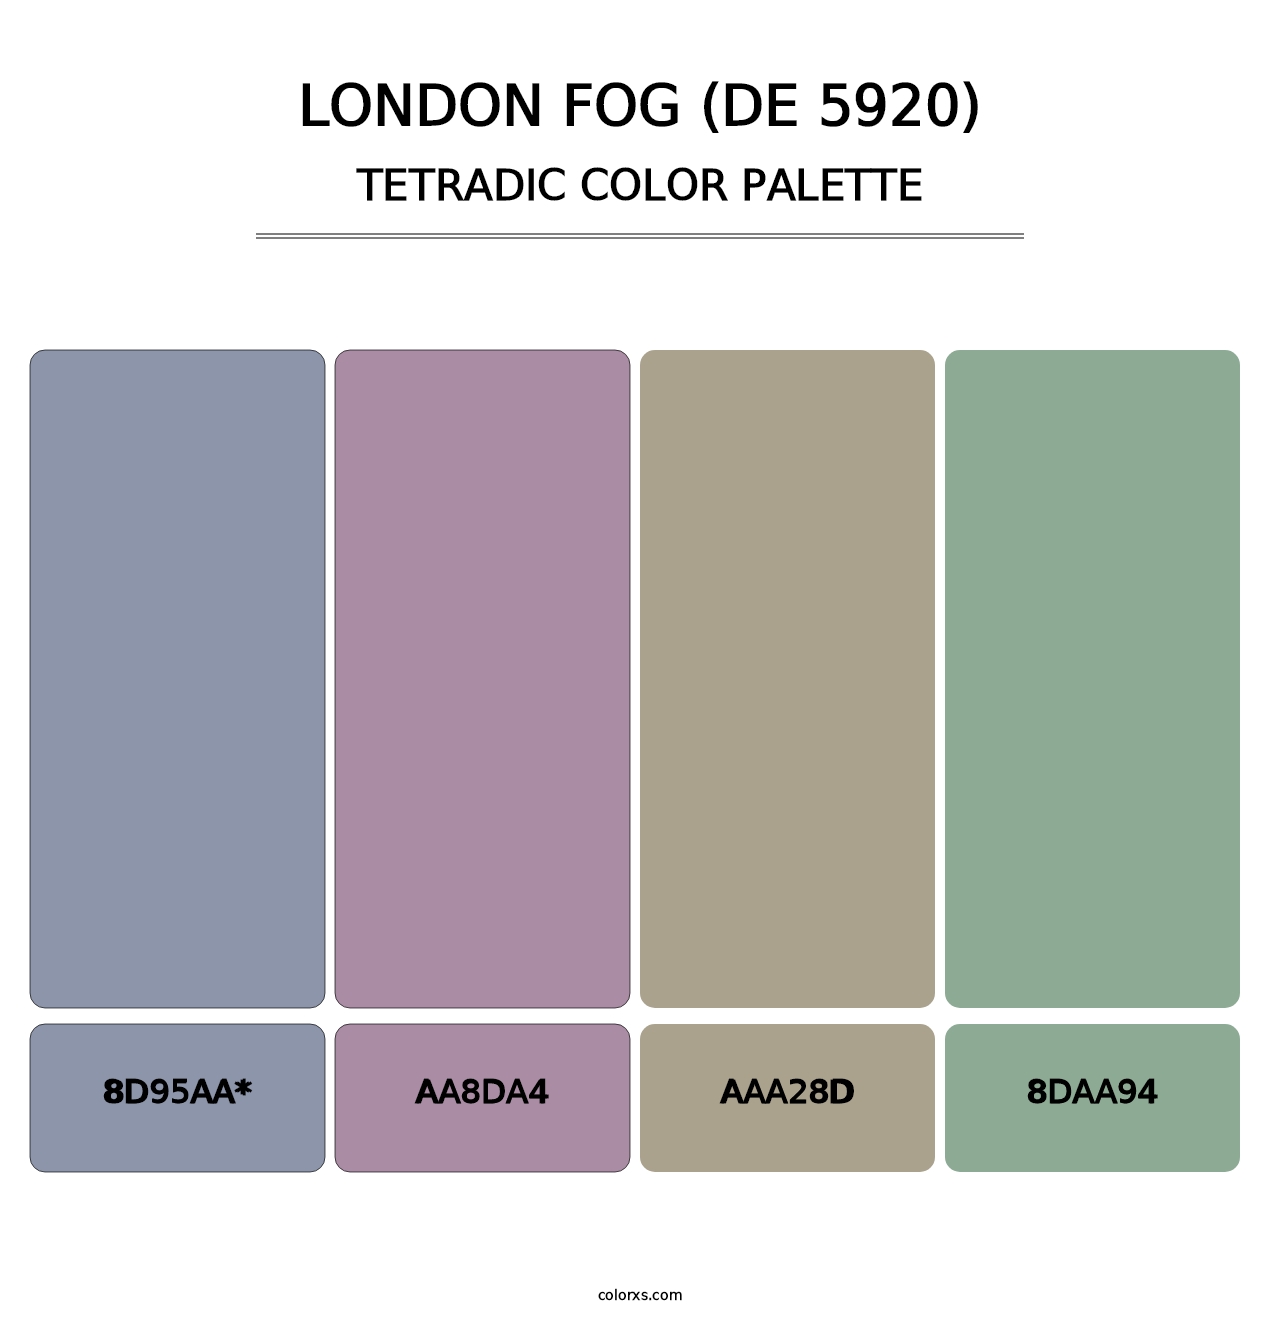 London Fog (DE 5920) - Tetradic Color Palette